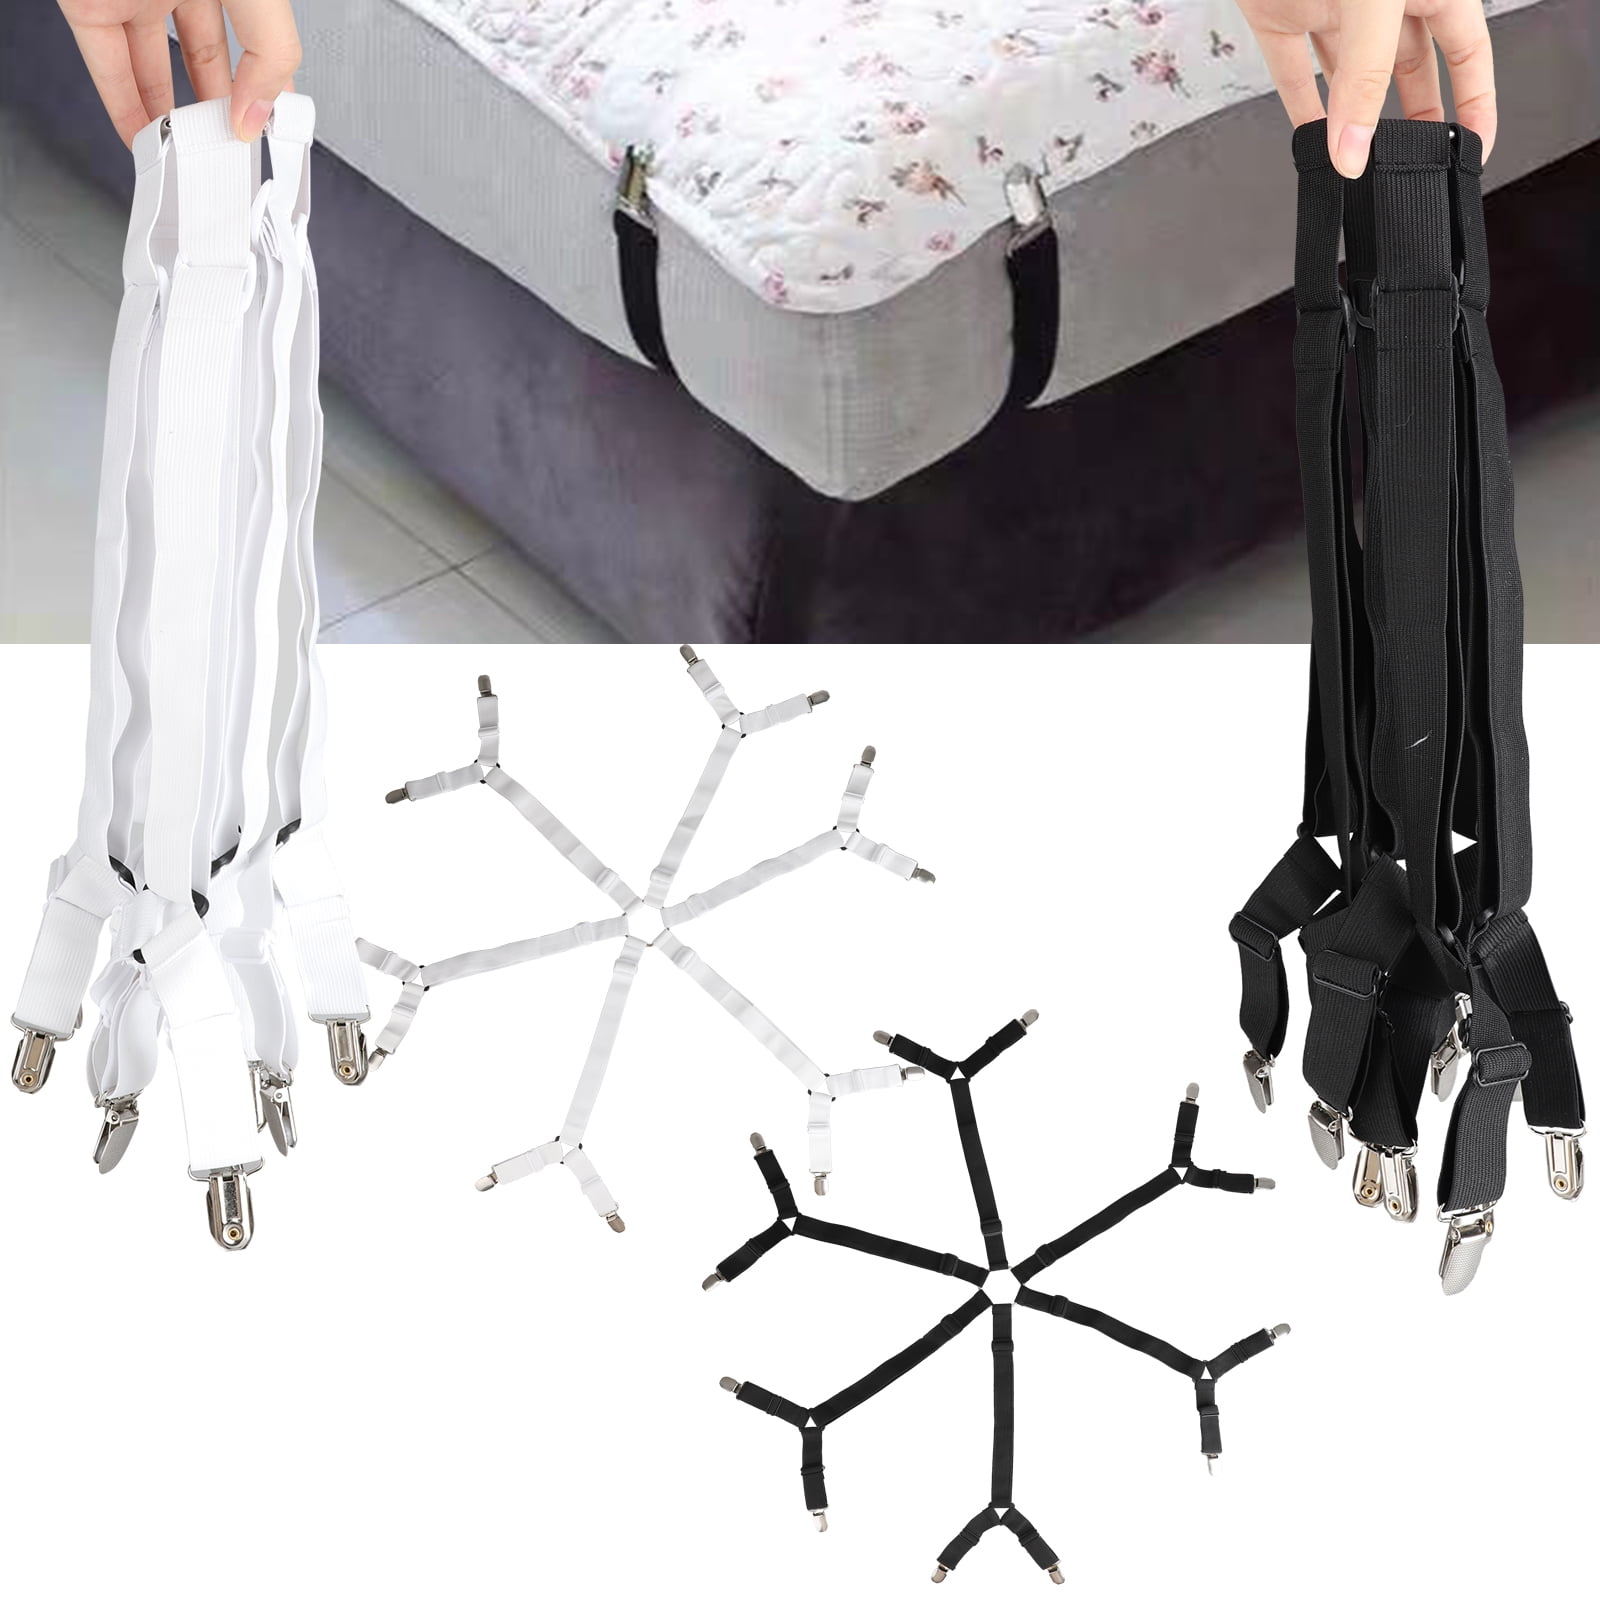 4X Bed Sheet Holder Strap Clip Mattress Blankets Elastic Gripper Garter Bedding 